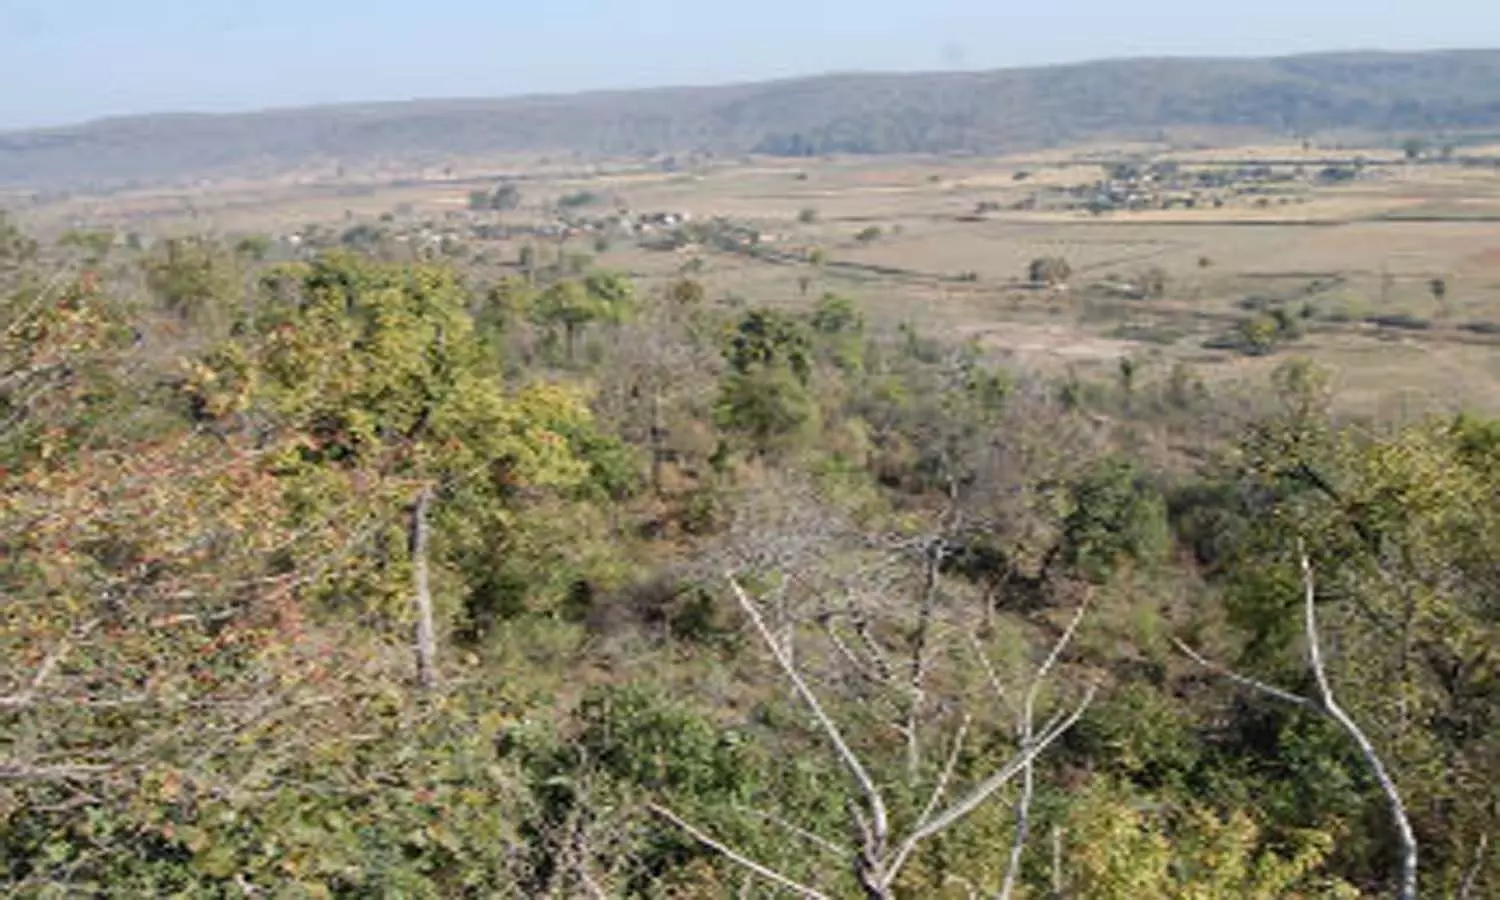 एमपी दमोह के कलमली जंगल में तेंदुए का शव मिलने से मचा हड़कम्प, वन विभाग ने शुरू की जांच